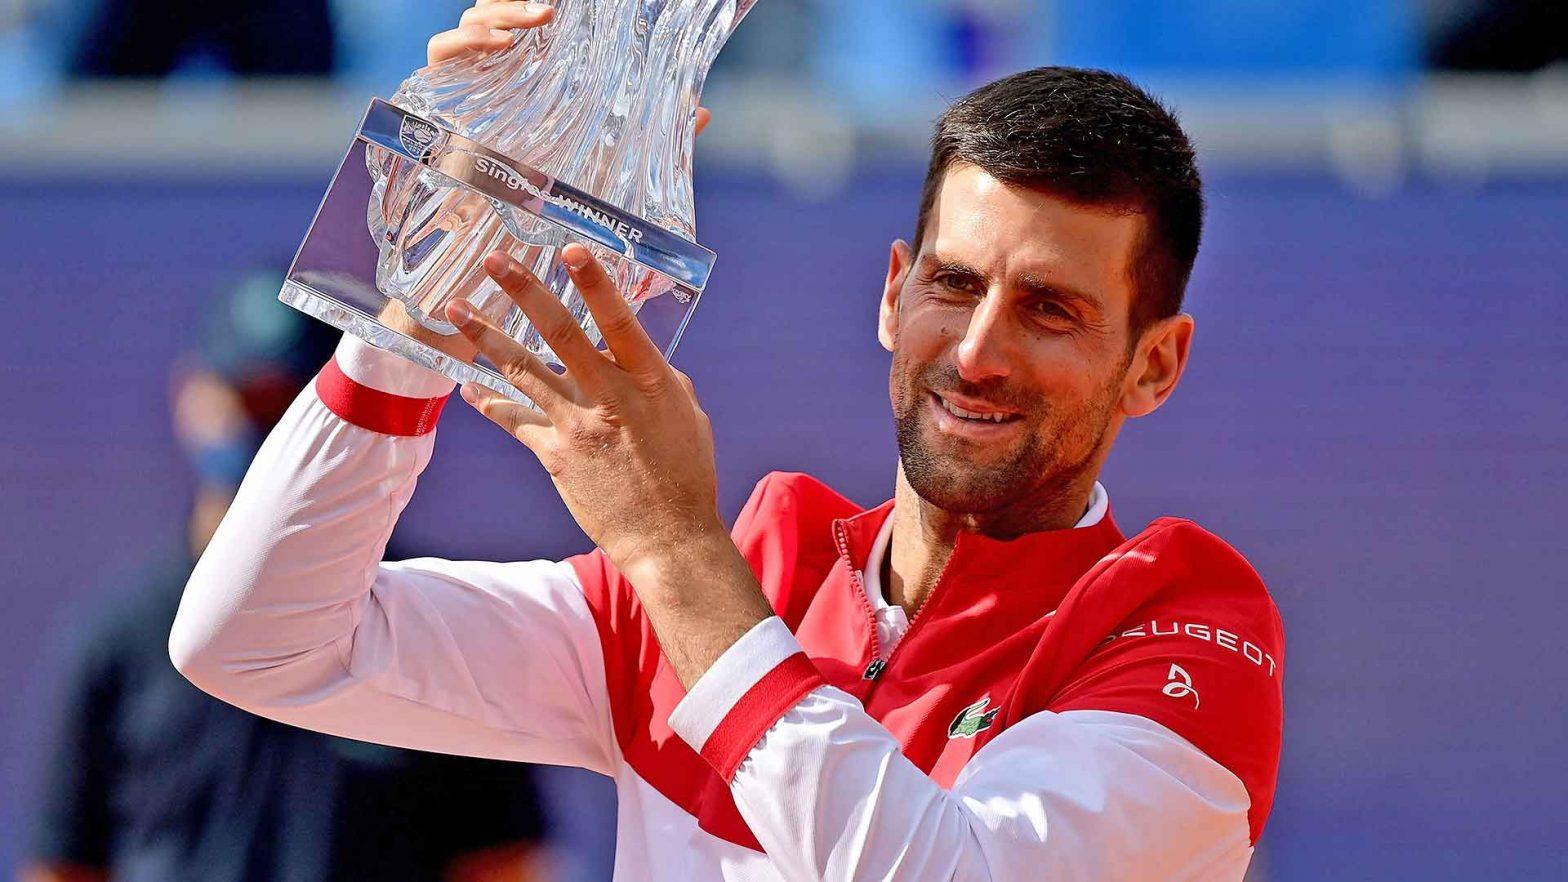 Djokovic Wins 83rd Career Title In Belgrade open | জোকোভিচ বেলগ্রেড ওপেন জিতে নিজের ক্যারিয়ার এর 83 তম শিরোপা জয় করলেন_2.1